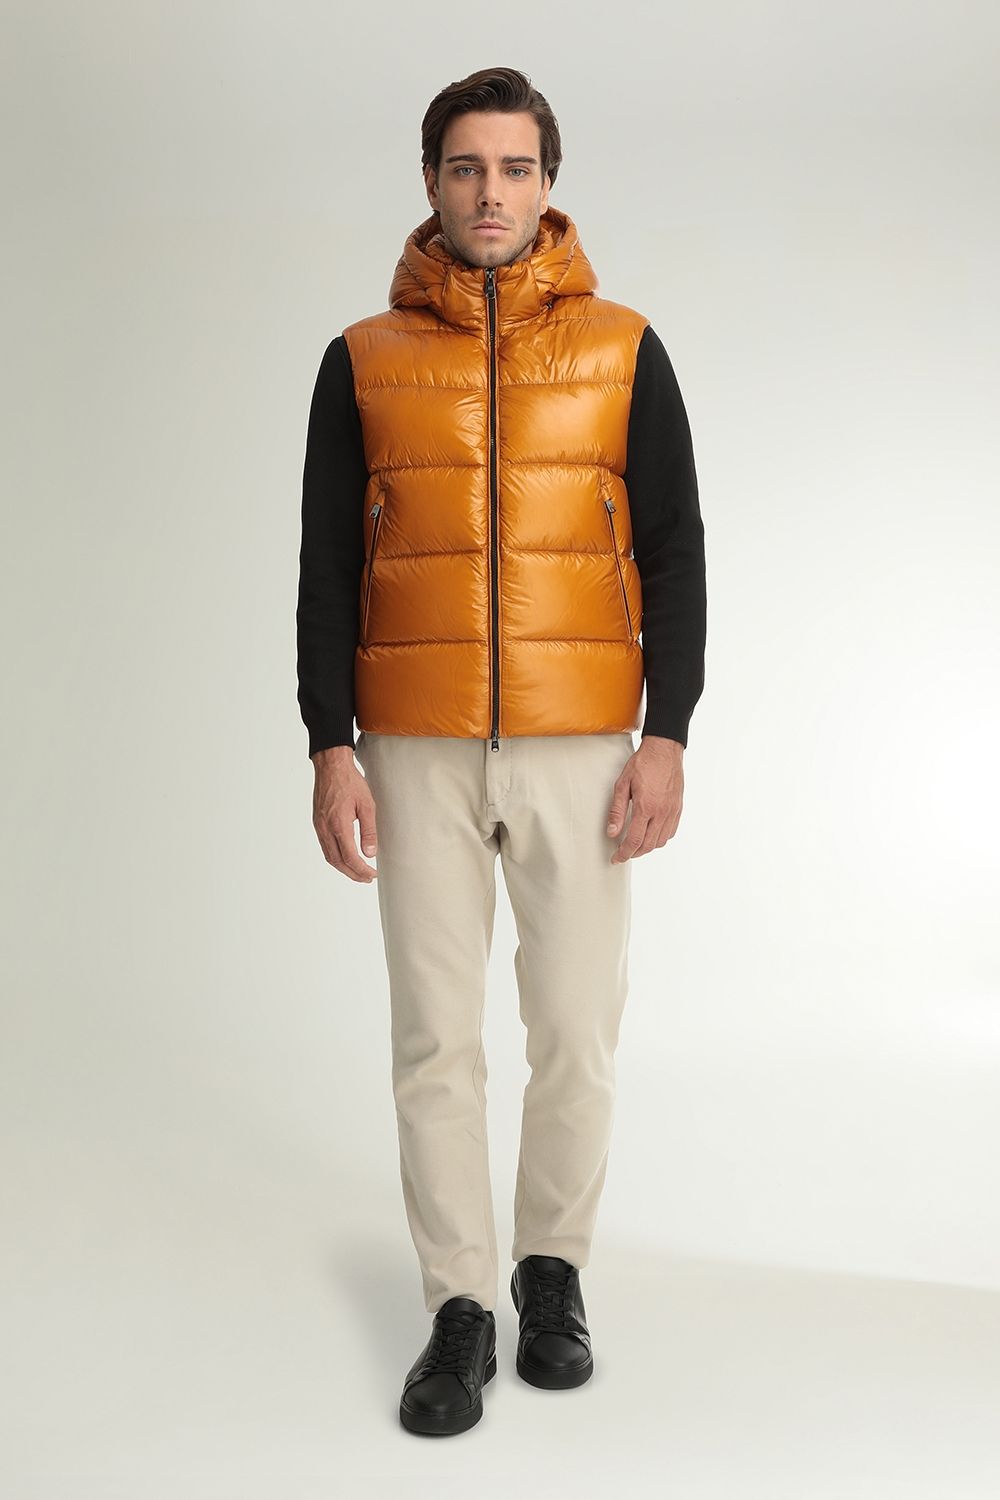 Men's vests Hetregó  Winter Collection 2020-21